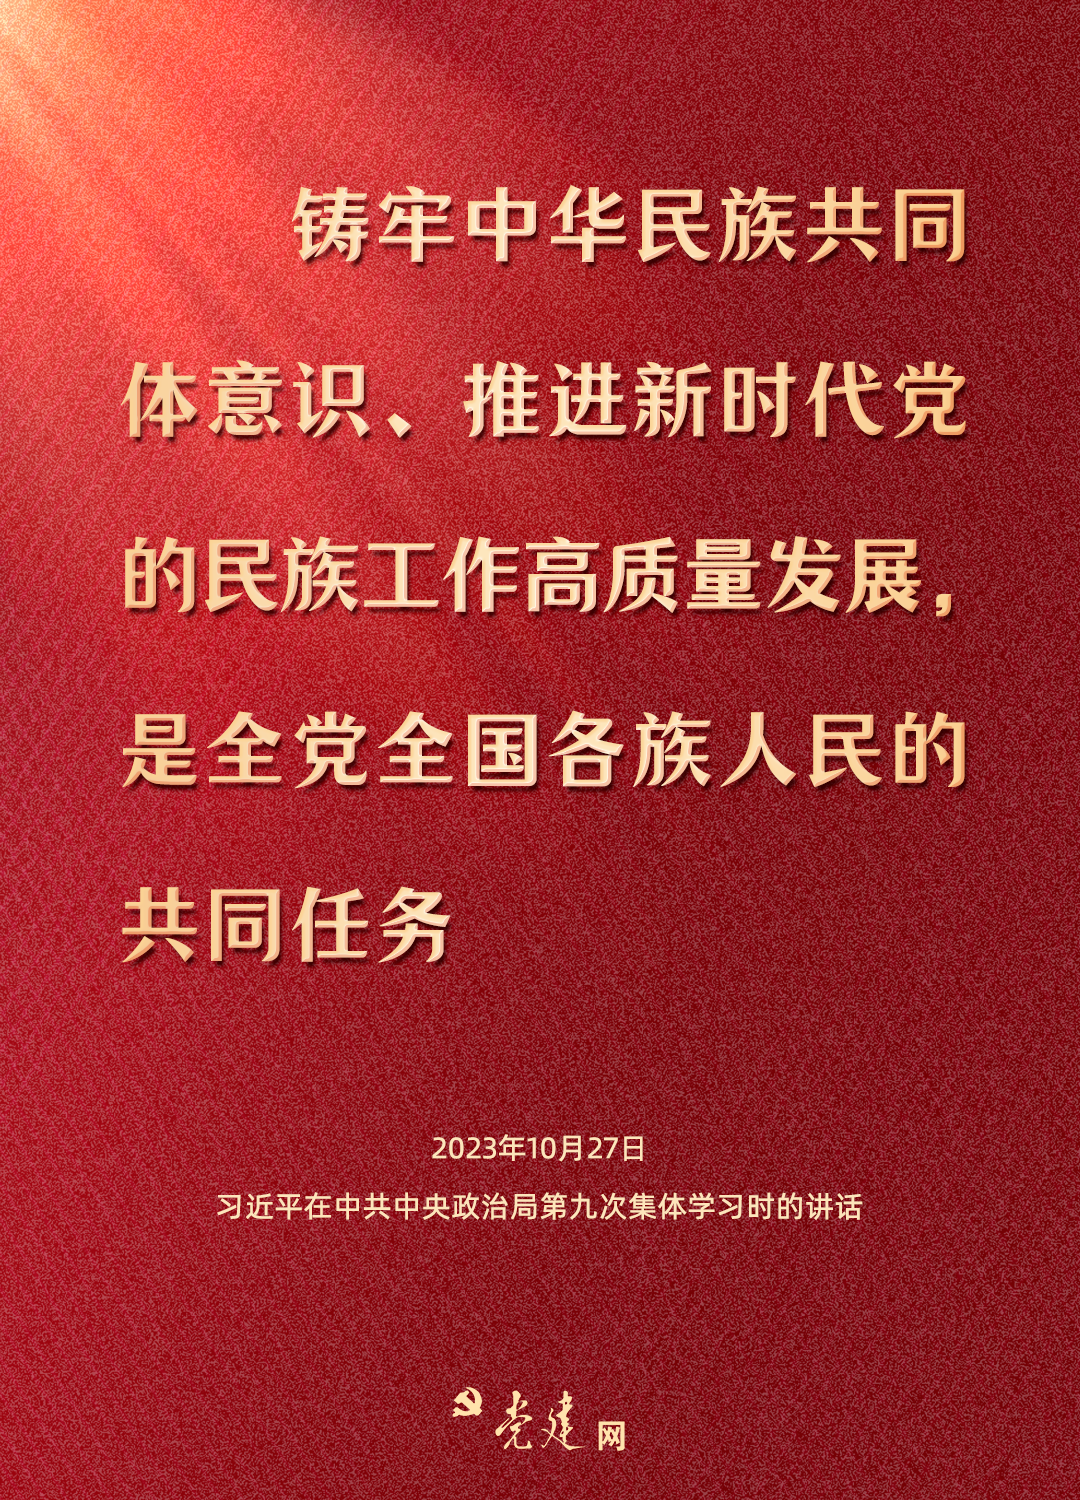 一图学习丨铸牢中华民族共同体意识，总书记这样强调6